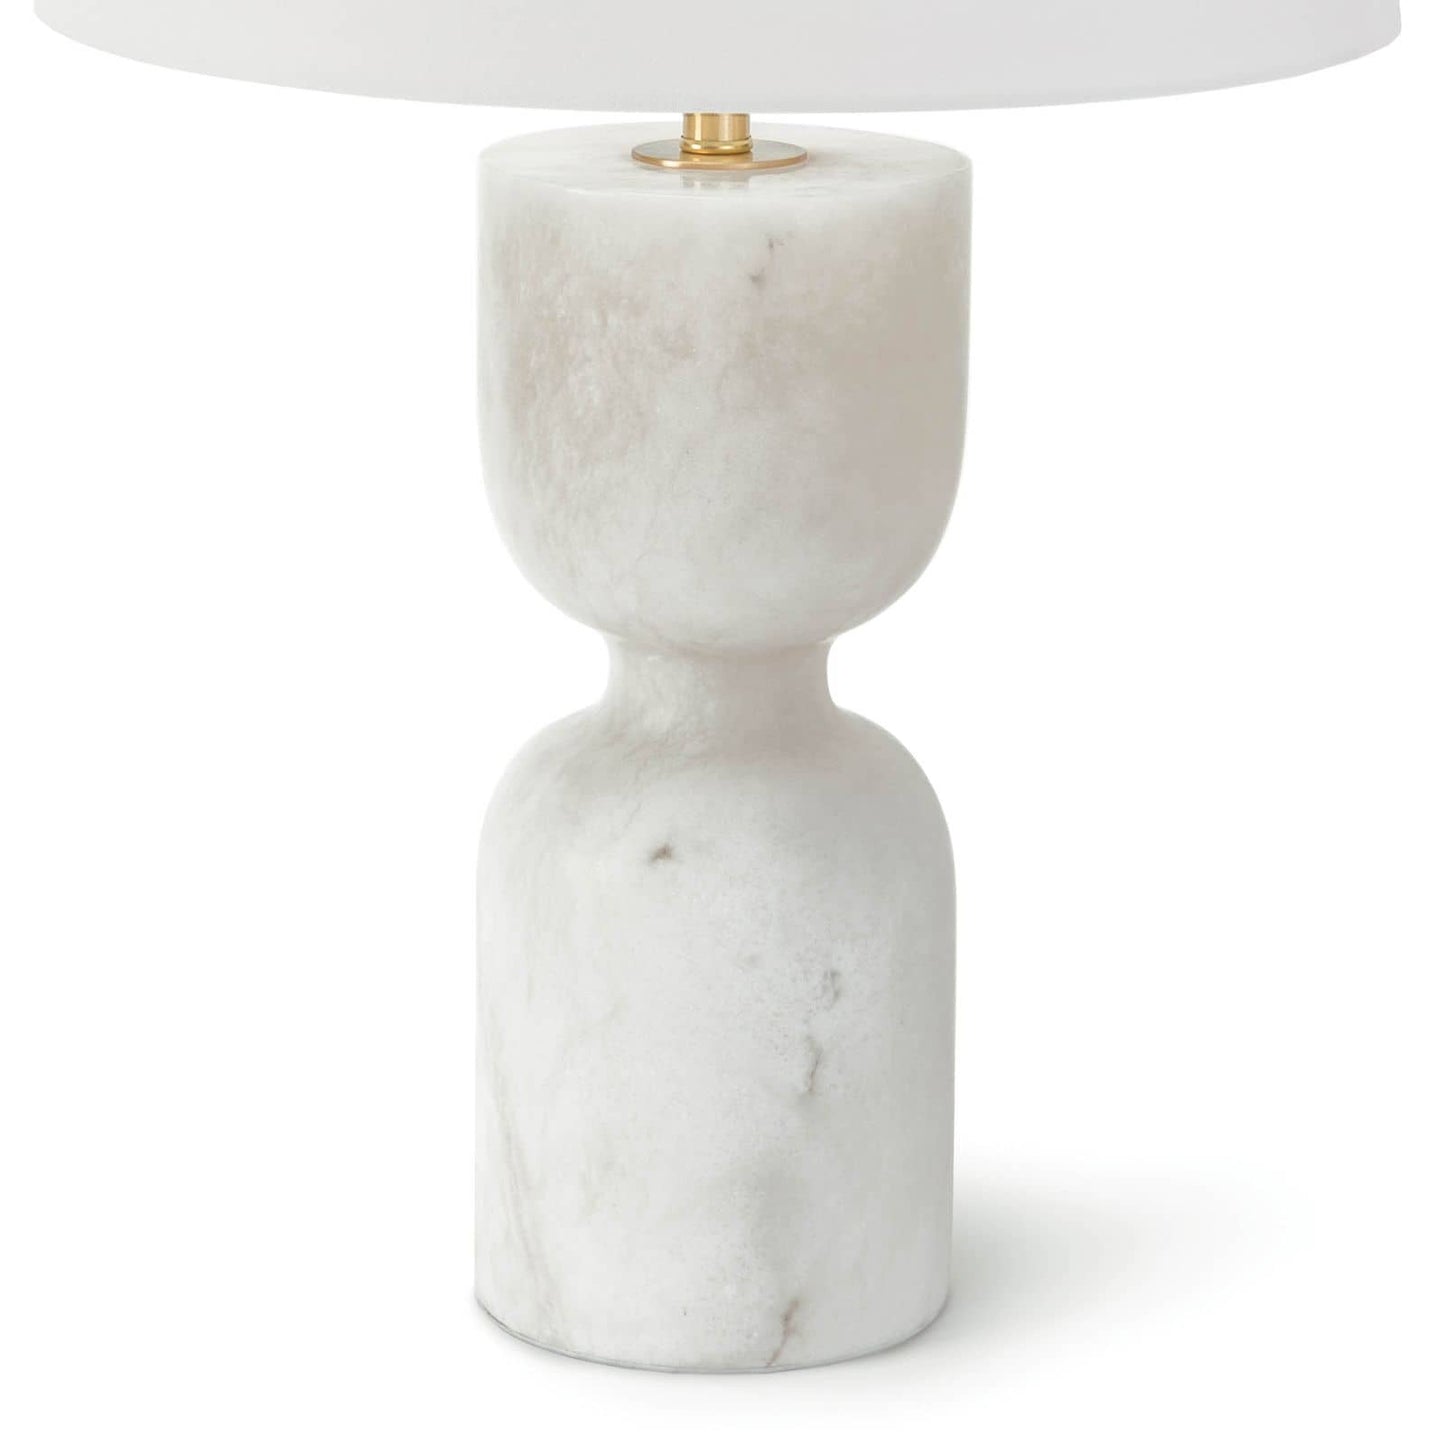 Regina Andrew Joan Alabaster Table Lamp